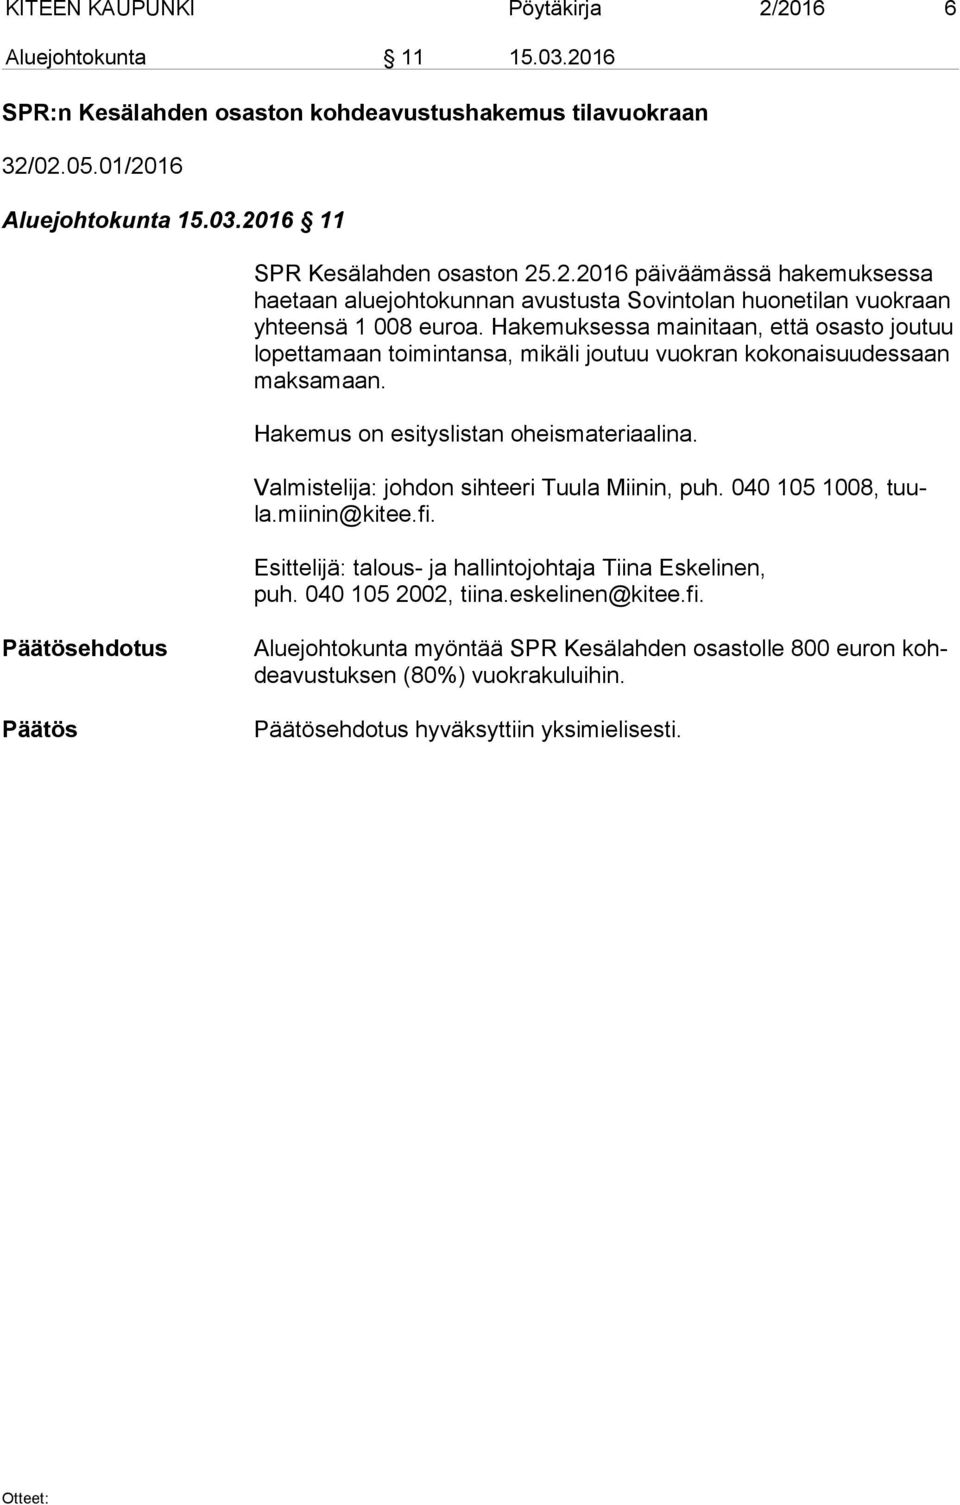 Valmistelija: johdon sihteeri Tuula Miinin, puh. 040 105 1008, tuula.miinin@kitee.fi. Esittelijä: talous- ja hallintojohtaja Tiina Eskelinen, puh. 040 105 2002, tiina.eskelinen@kitee.fi. ehdotus Aluejohtokunta myöntää SPR Kesälahden osastolle 800 euron kohde avus tuk sen (80%) vuokrakuluihin.